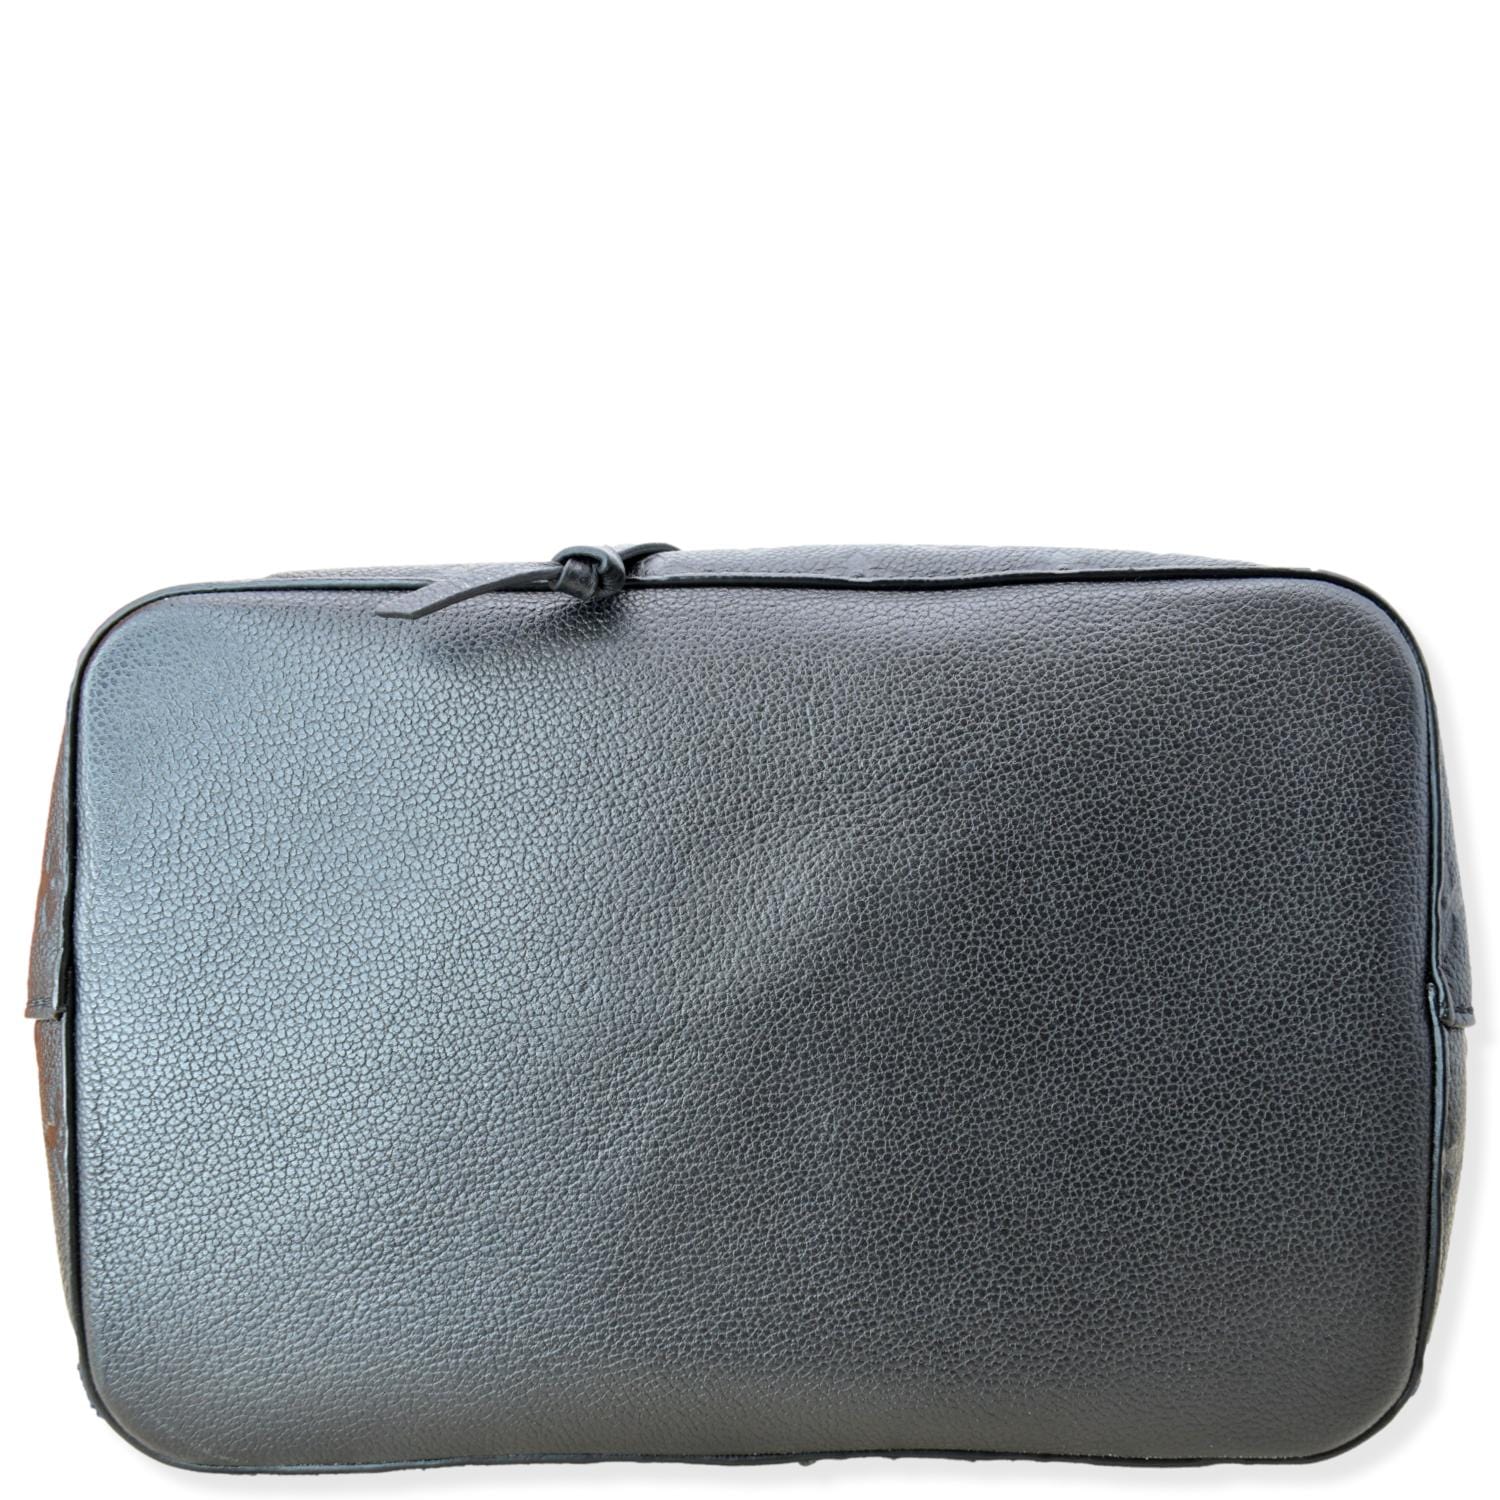 Bags  Louis Vuitton Neonoe Empreinte Red Blue Convertible Bag 220